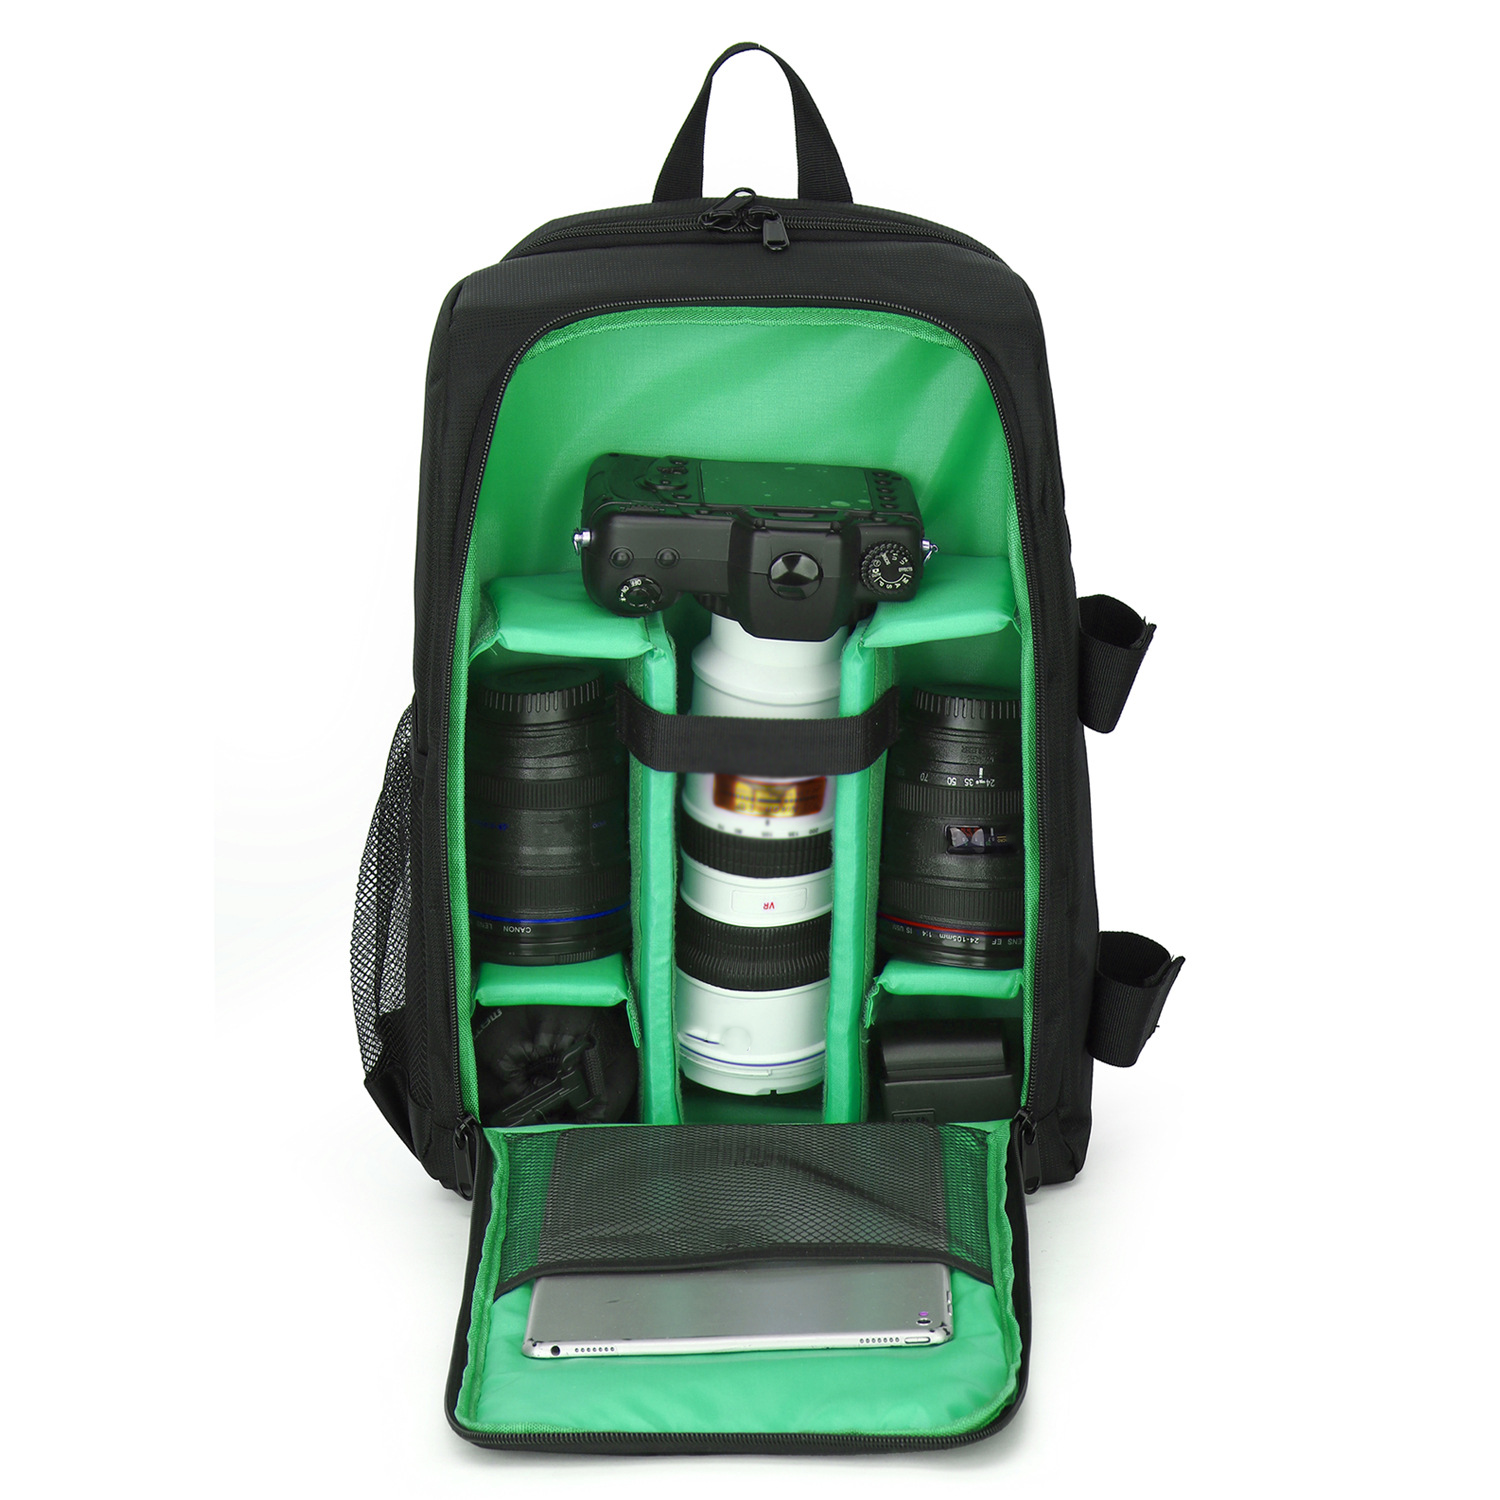 SYNTEK SLR Digitalkamera Tasche Rucksäcke Schultern grün Tasche wasserdicht Outdoor-Fotografie Kameratasche, tragen